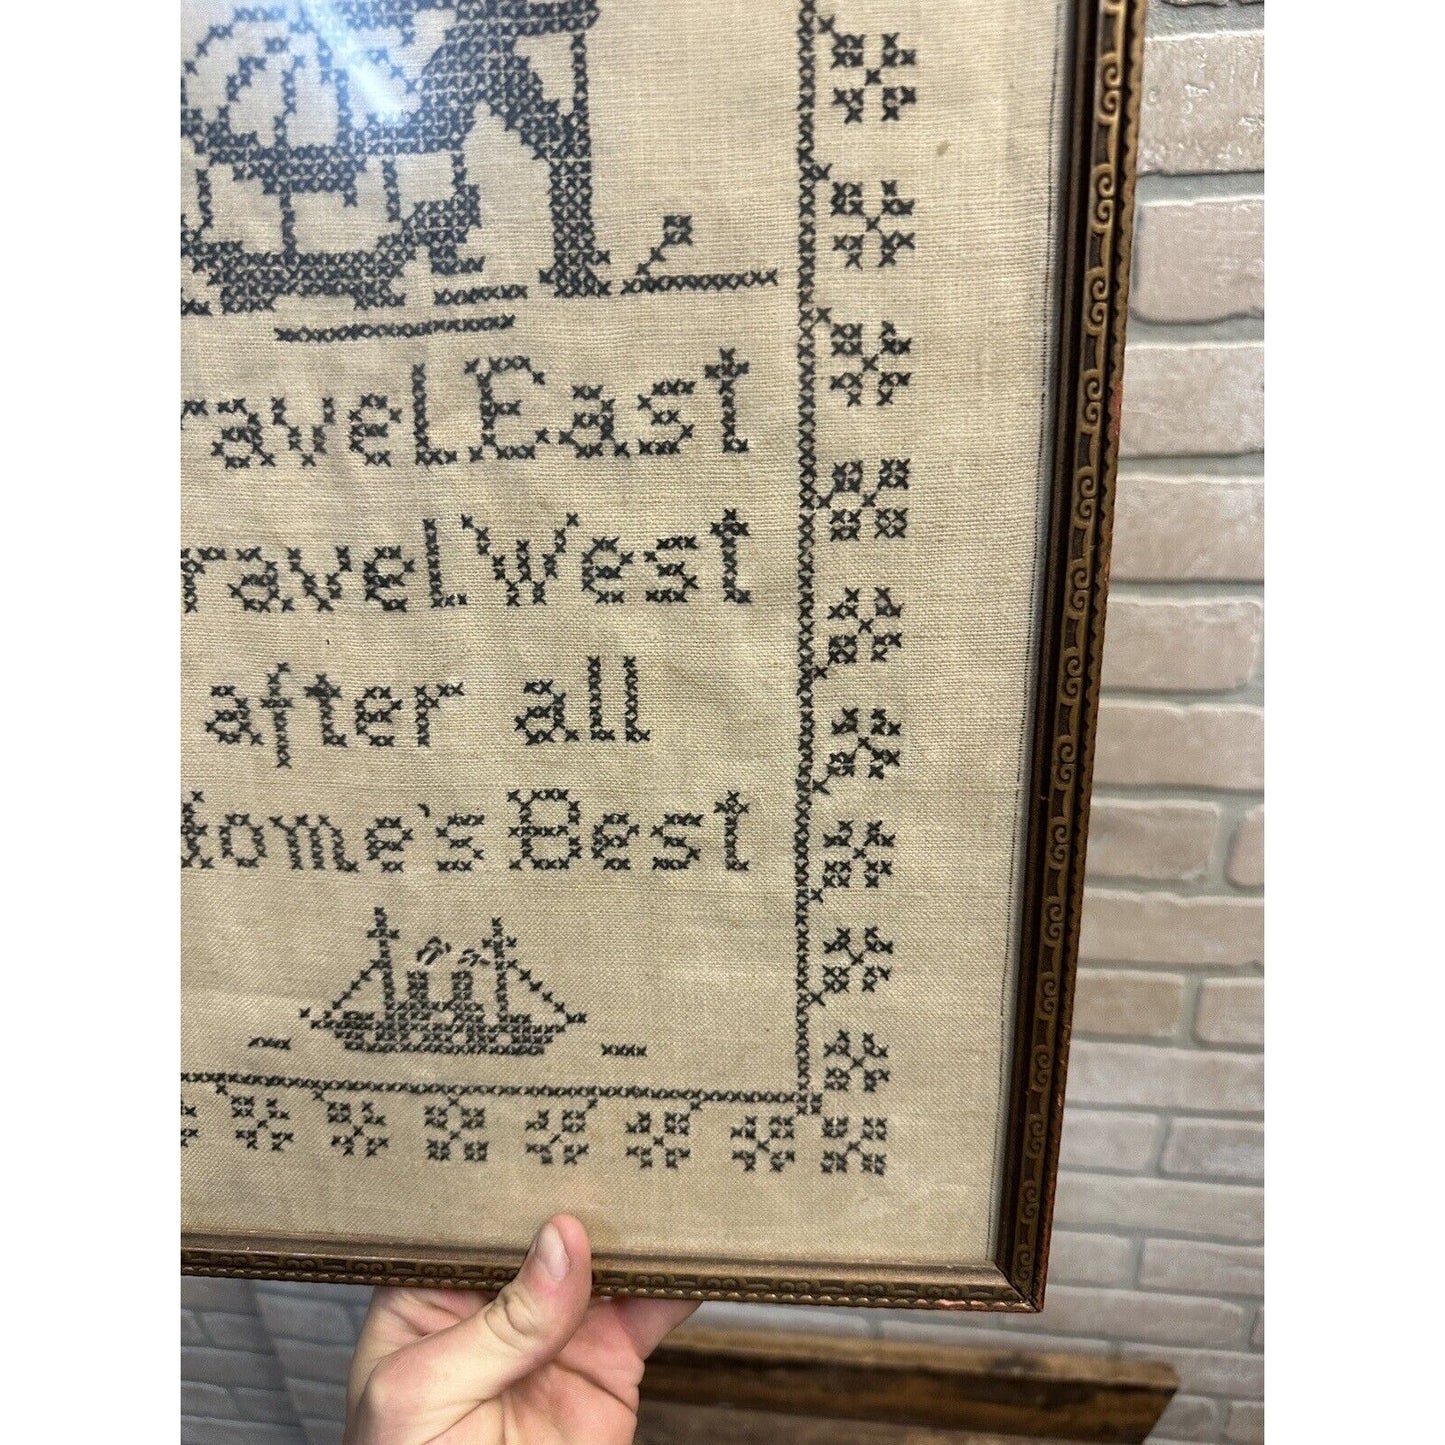 Antique Primitive Travel East Travel West Cross Stitch Sampler Framed